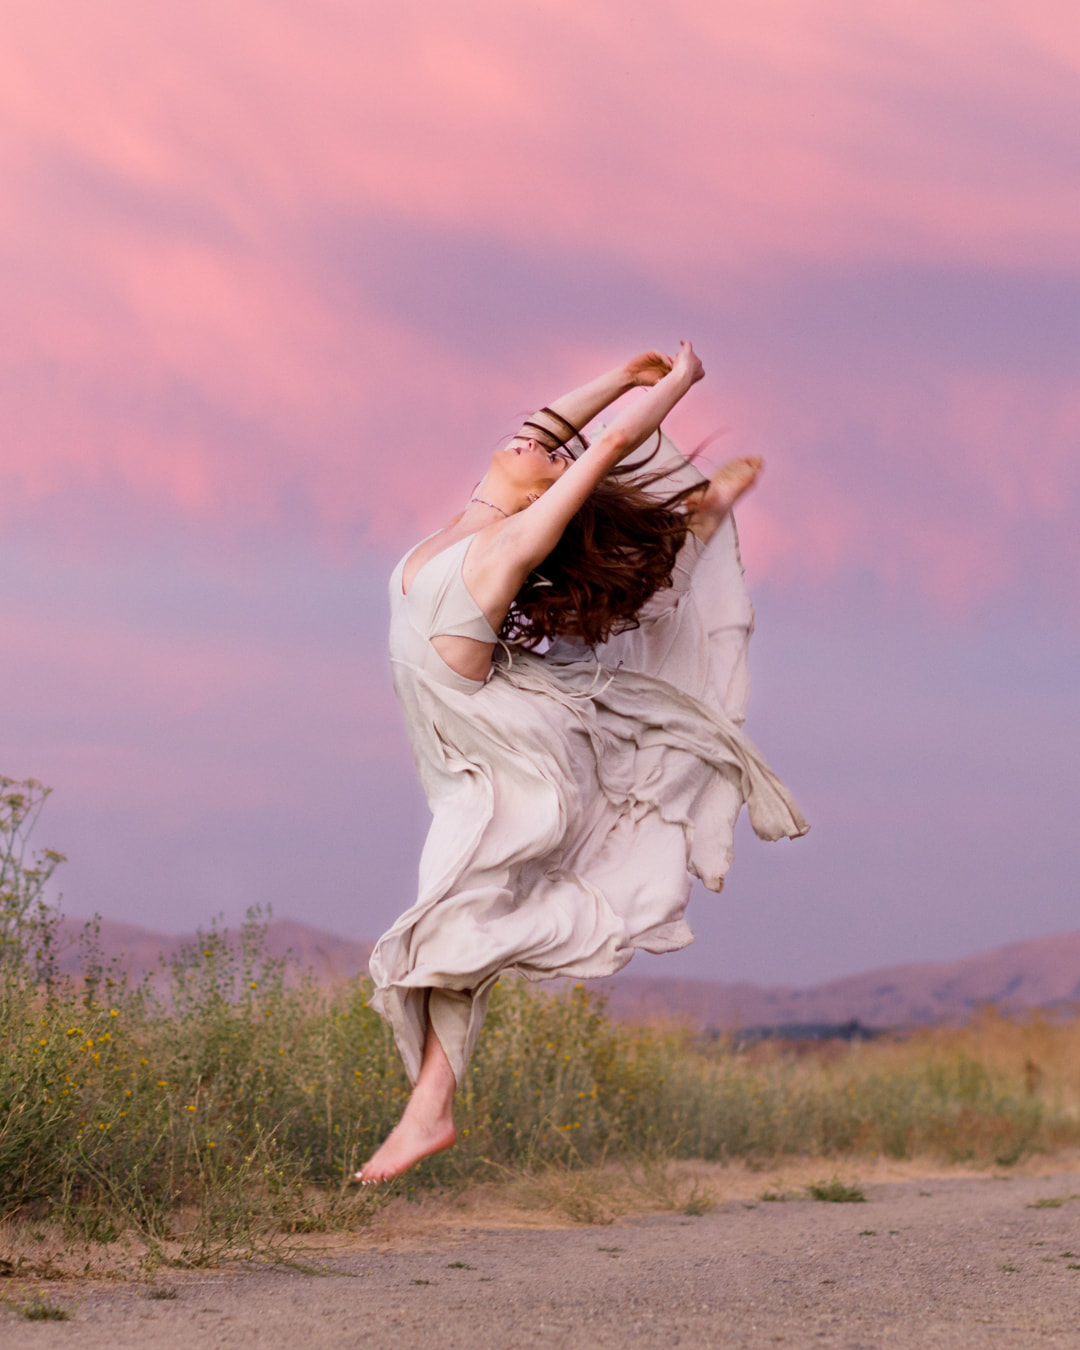 A ballet dancer, en pointe, with a magenta dress fluttering in the breeze on a sidewalk in San Ramon, CA